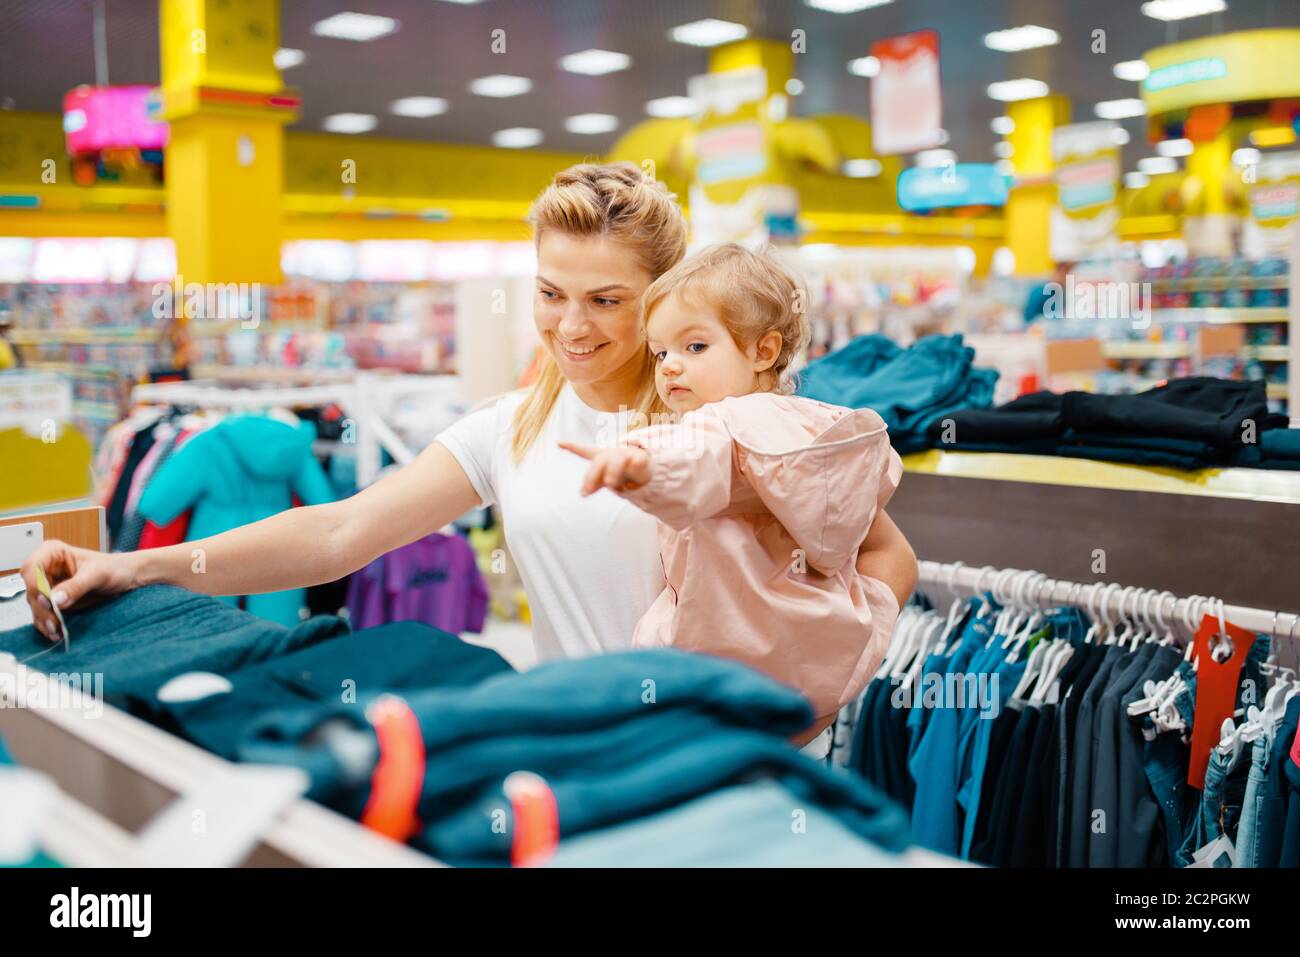 Madre E Hija En Una Tienda De Moda Comprando Ropa. Concepto De Compra Foto  de archivo - Imagen de disfrute, hembras: 245829780